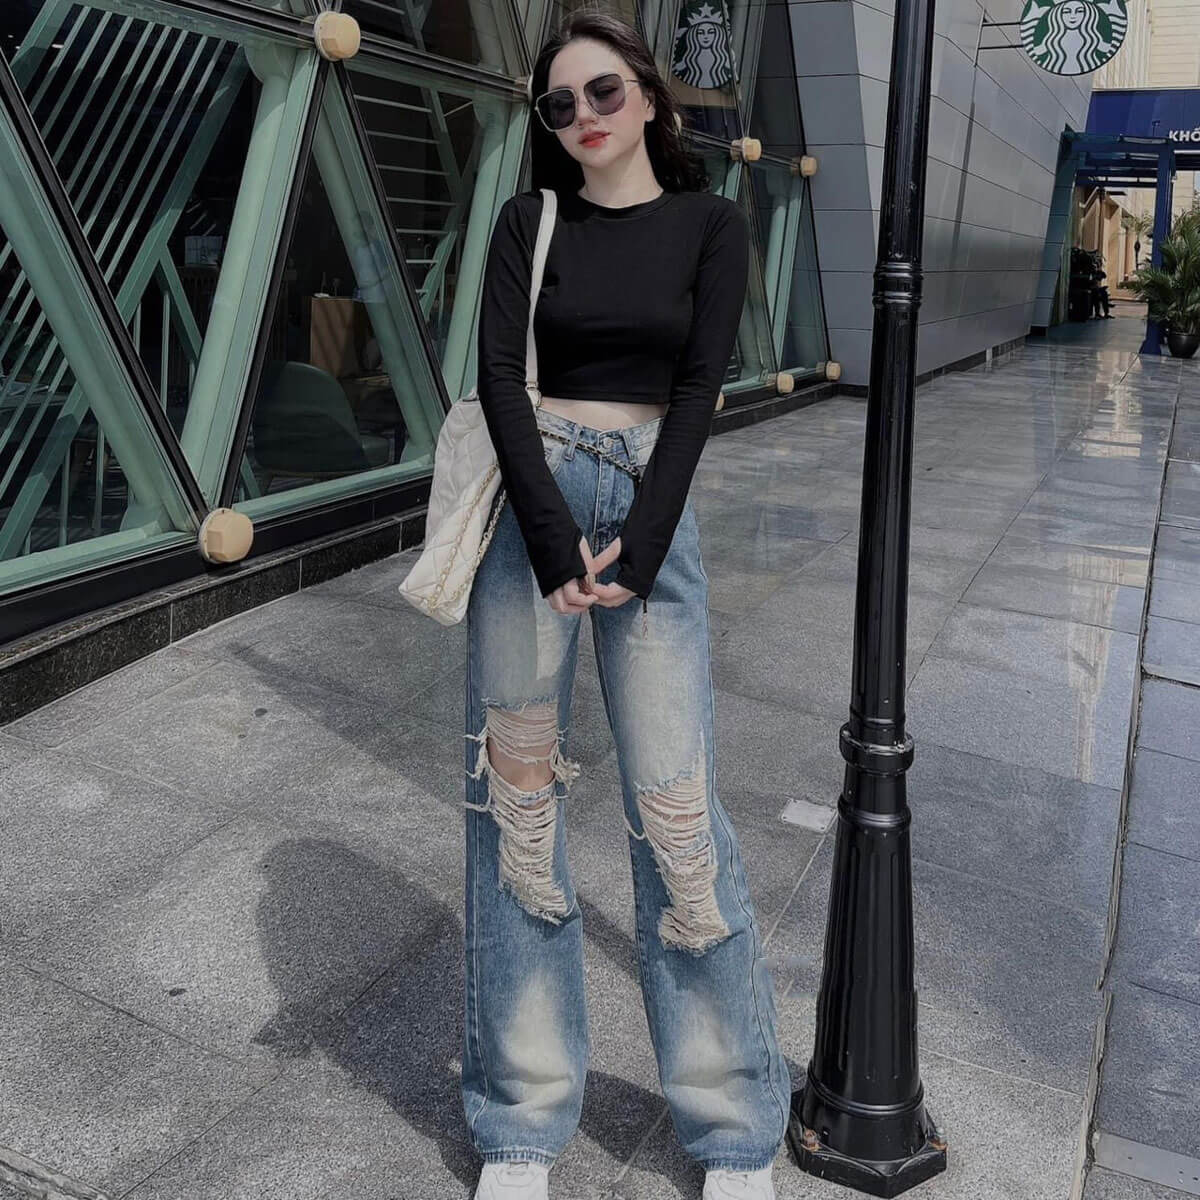 Mua Quần Jean Nữ Ống Rộng Style Hàn Quốc, Quần Bò Nữ Ống Suông Cạp Chéo  Sexy (681) - S=38-43kg - XANH NHẠT tại Thế Giới Hàng Quảng Châu | Tiki